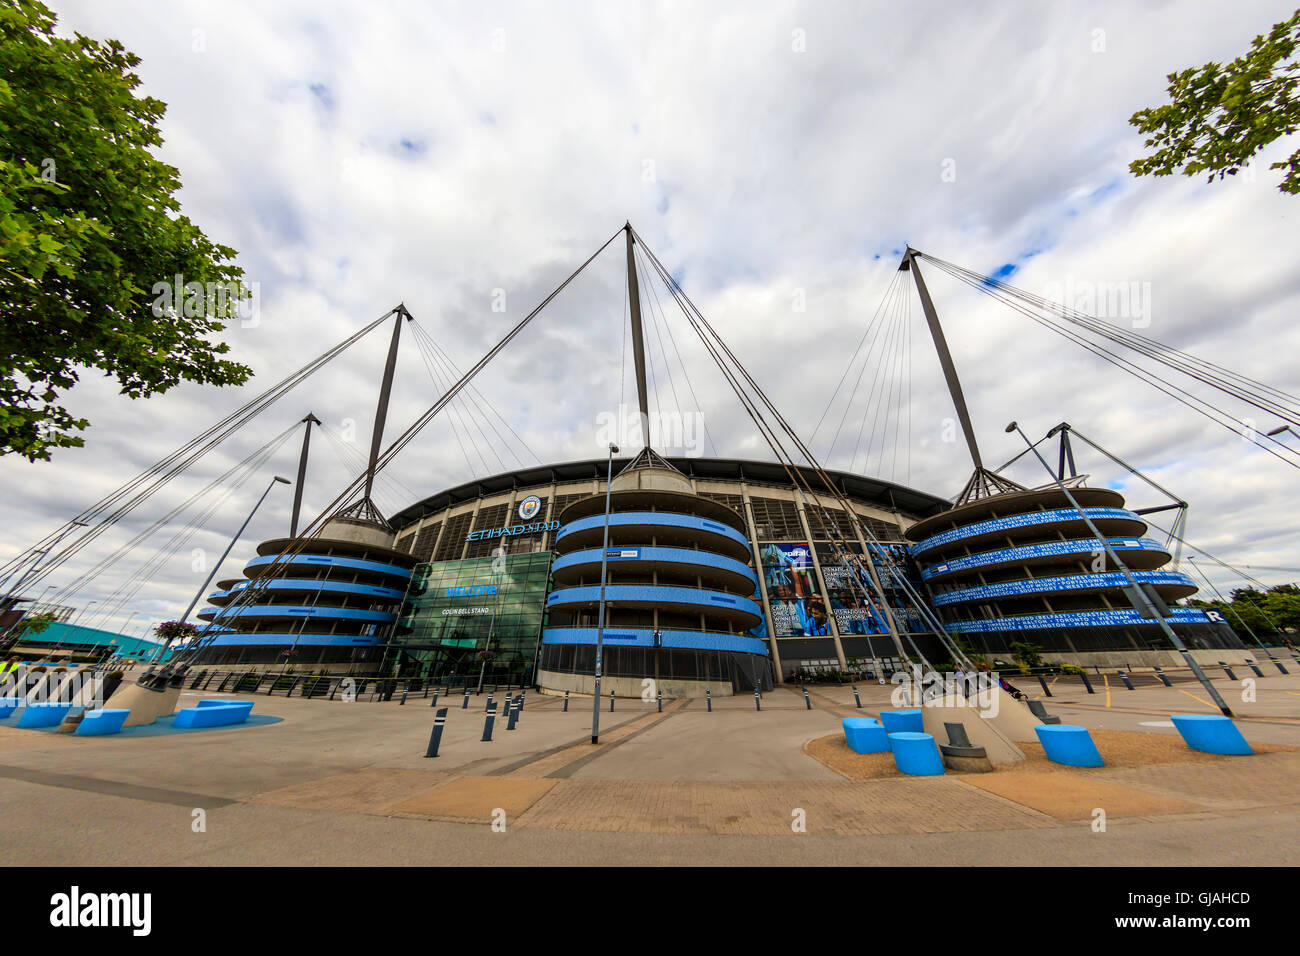 Etihad Stadium è a casa per il Manchester City English Premier League football club, uno dei più grandi club in Inghilterra. Foto Stock